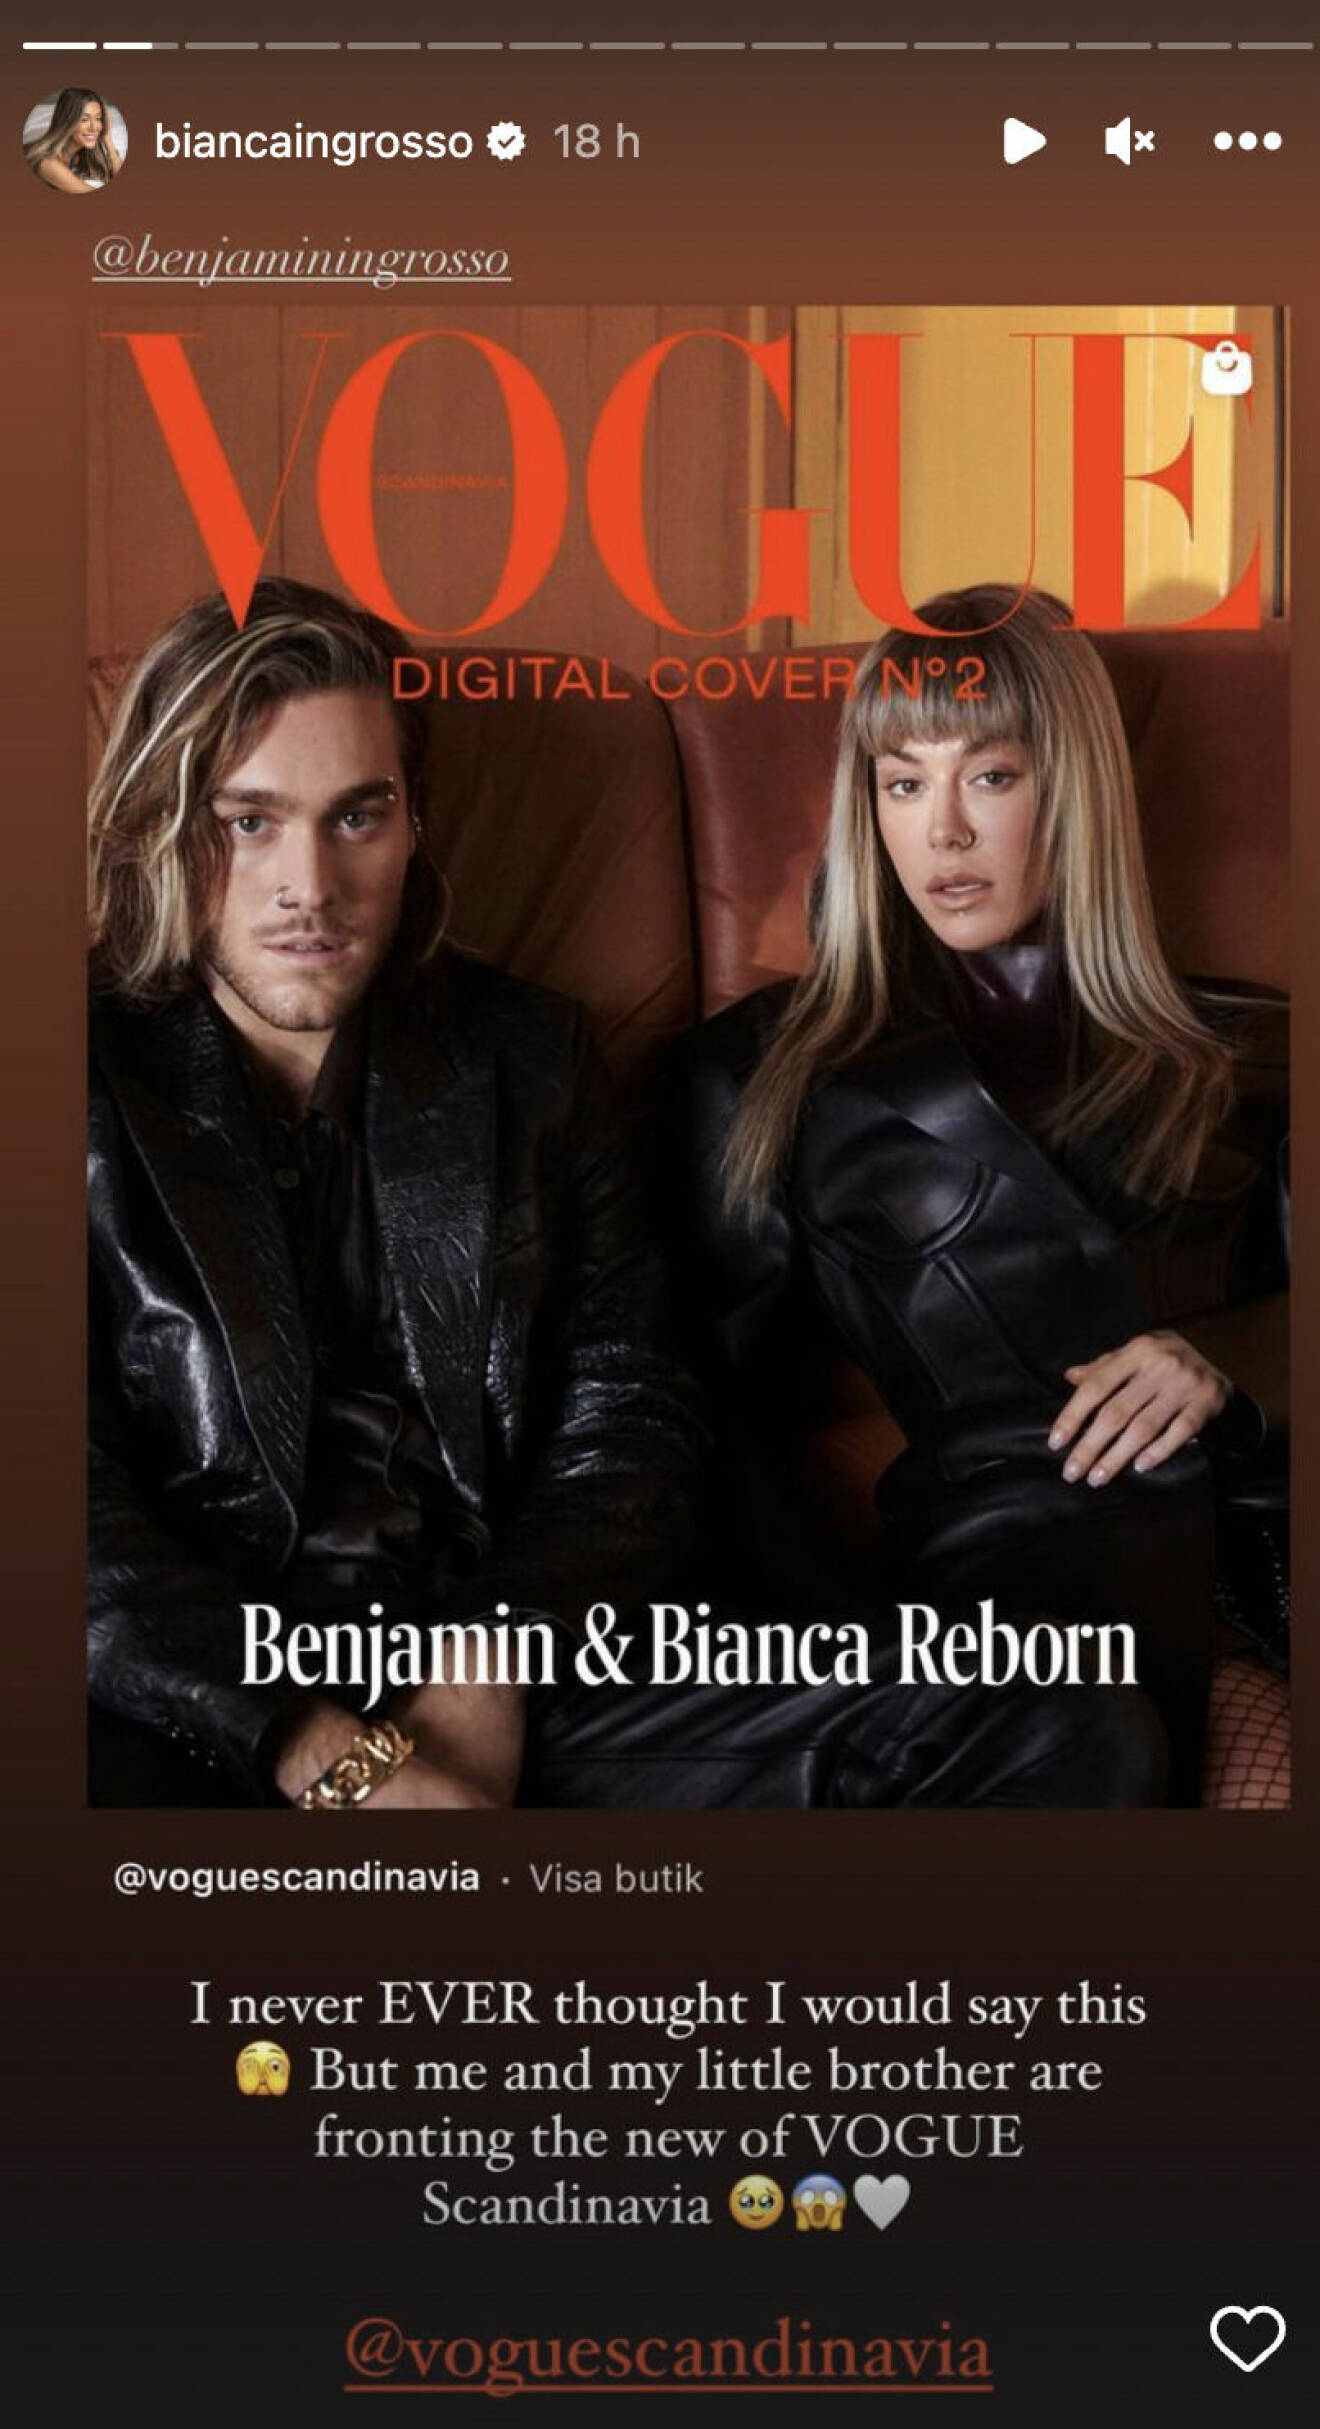 Ett inlägg av Bianca Ingrosso där hon visar upp ett omslag med henne och brodern Benjamin Ingrosso